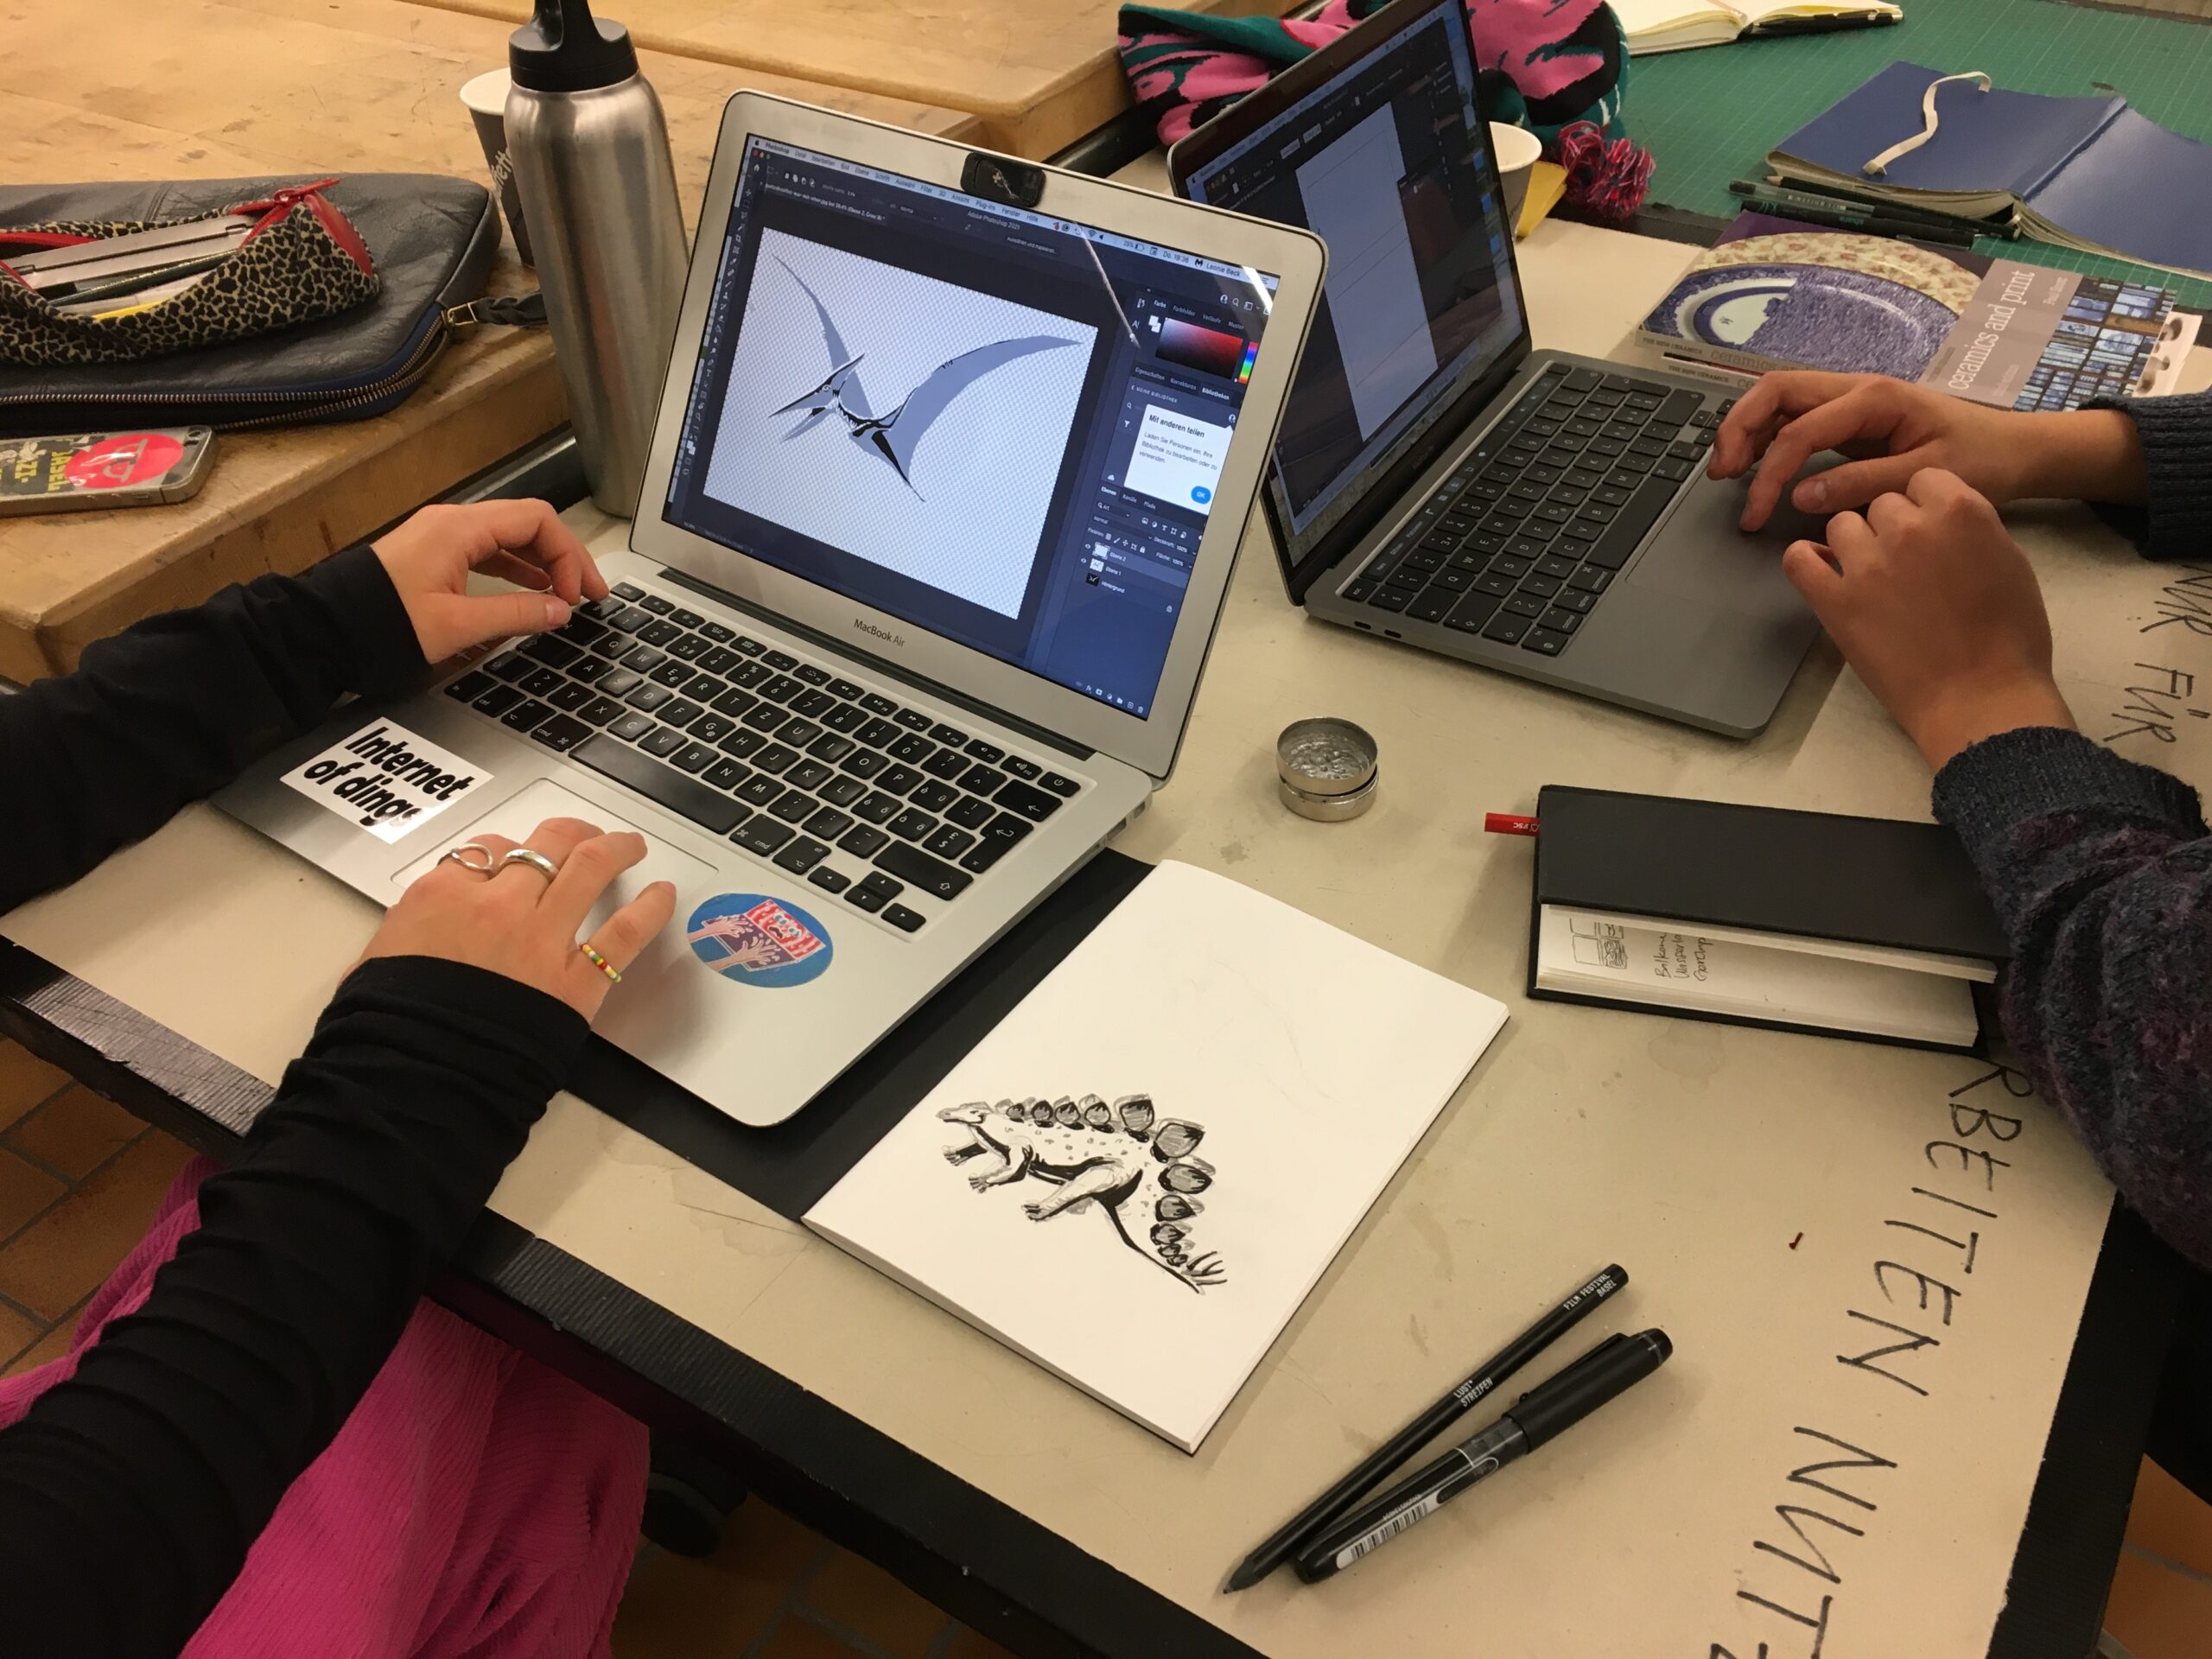 Két nyitott laptop áll egy asztalon, és egy-egy személy dolgozik rajta. Kezük a billentyűzeten pihen. A képernyőn egy repülő őshüllő (pteroszaurusz) grafikája látható. A képernyőtől jobbra egy vázlatfüzet hever, amelyben egy dinoszaurusz tussal készült rajza látszik.